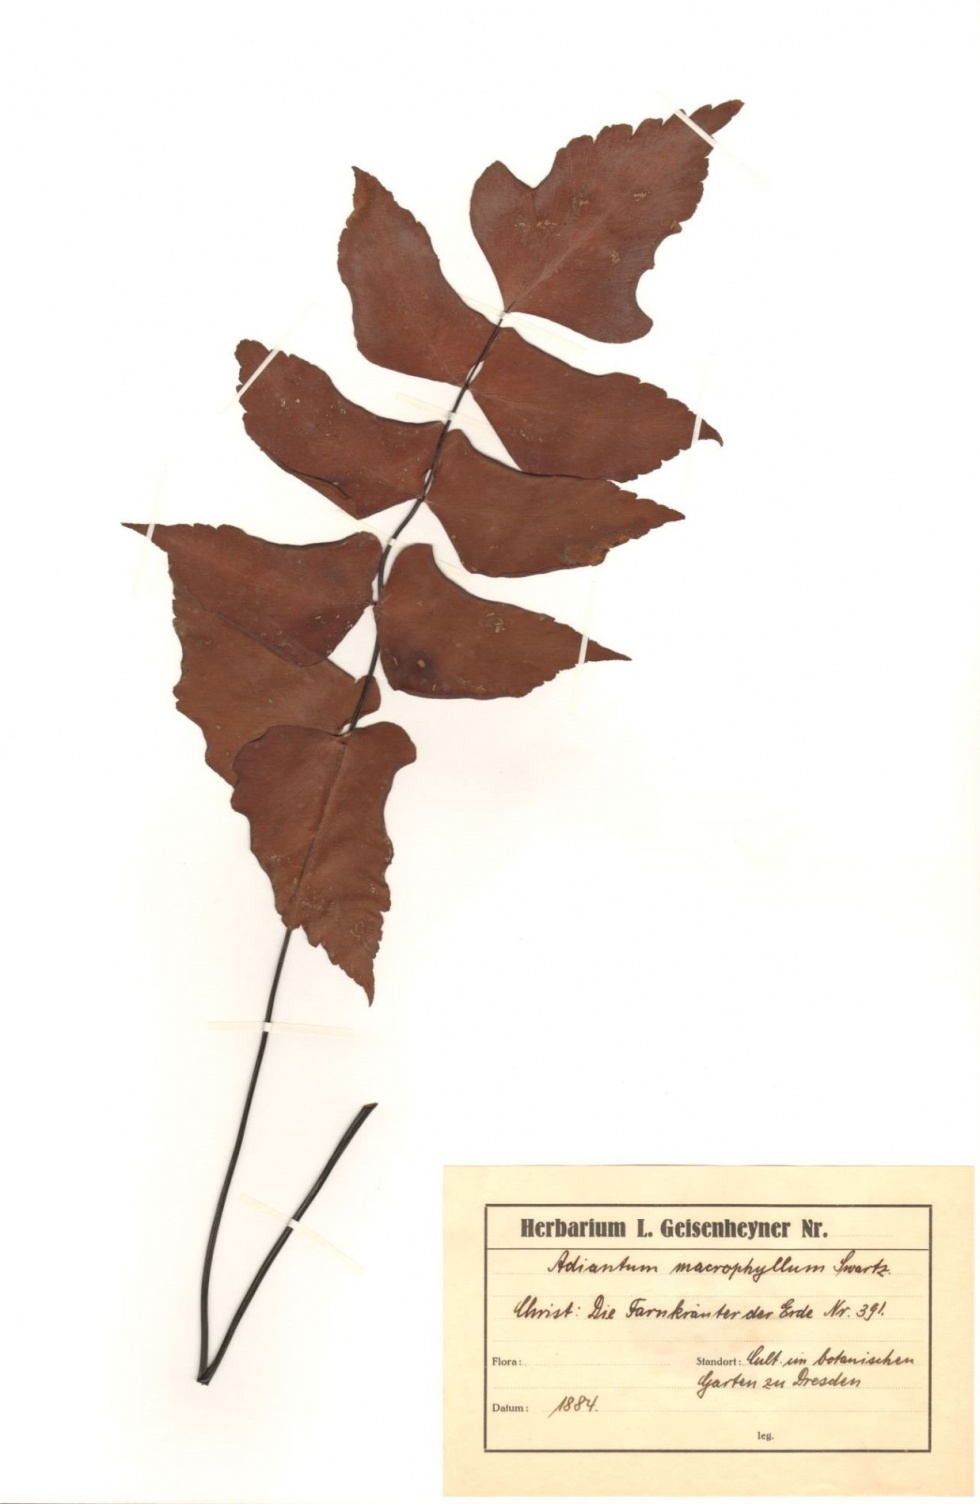 Adiantum macrophyllum Sw. (Naturhistorisches Museum Mainz / Landessammlung für Naturkunde Rheinland-Pfalz CC BY-NC-SA)